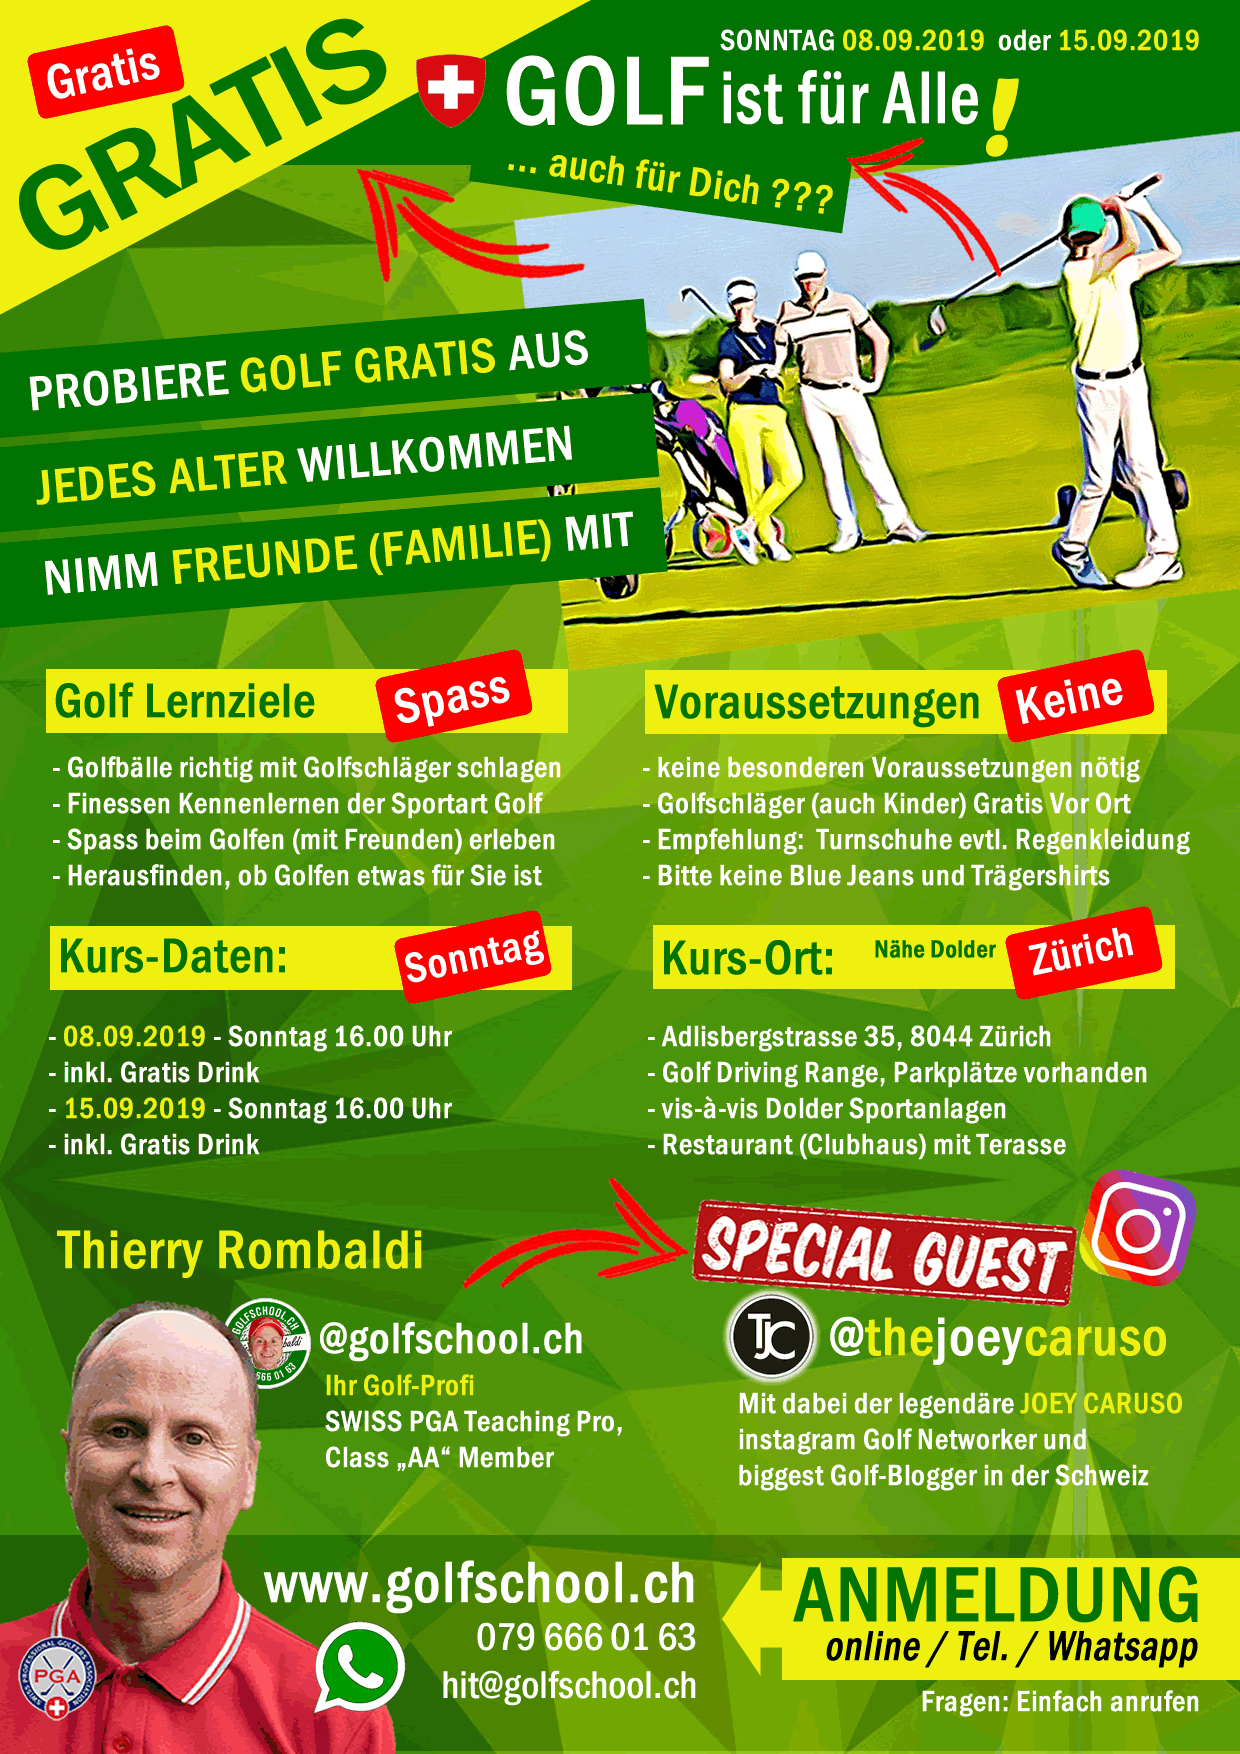 Gratis-Golf-Schnupperkurs-Event-Zuerich-Golfschool-Free-Golf-Unterricht-Golfschule-Thierry-Rombaldi-Dolder-Adlisberg